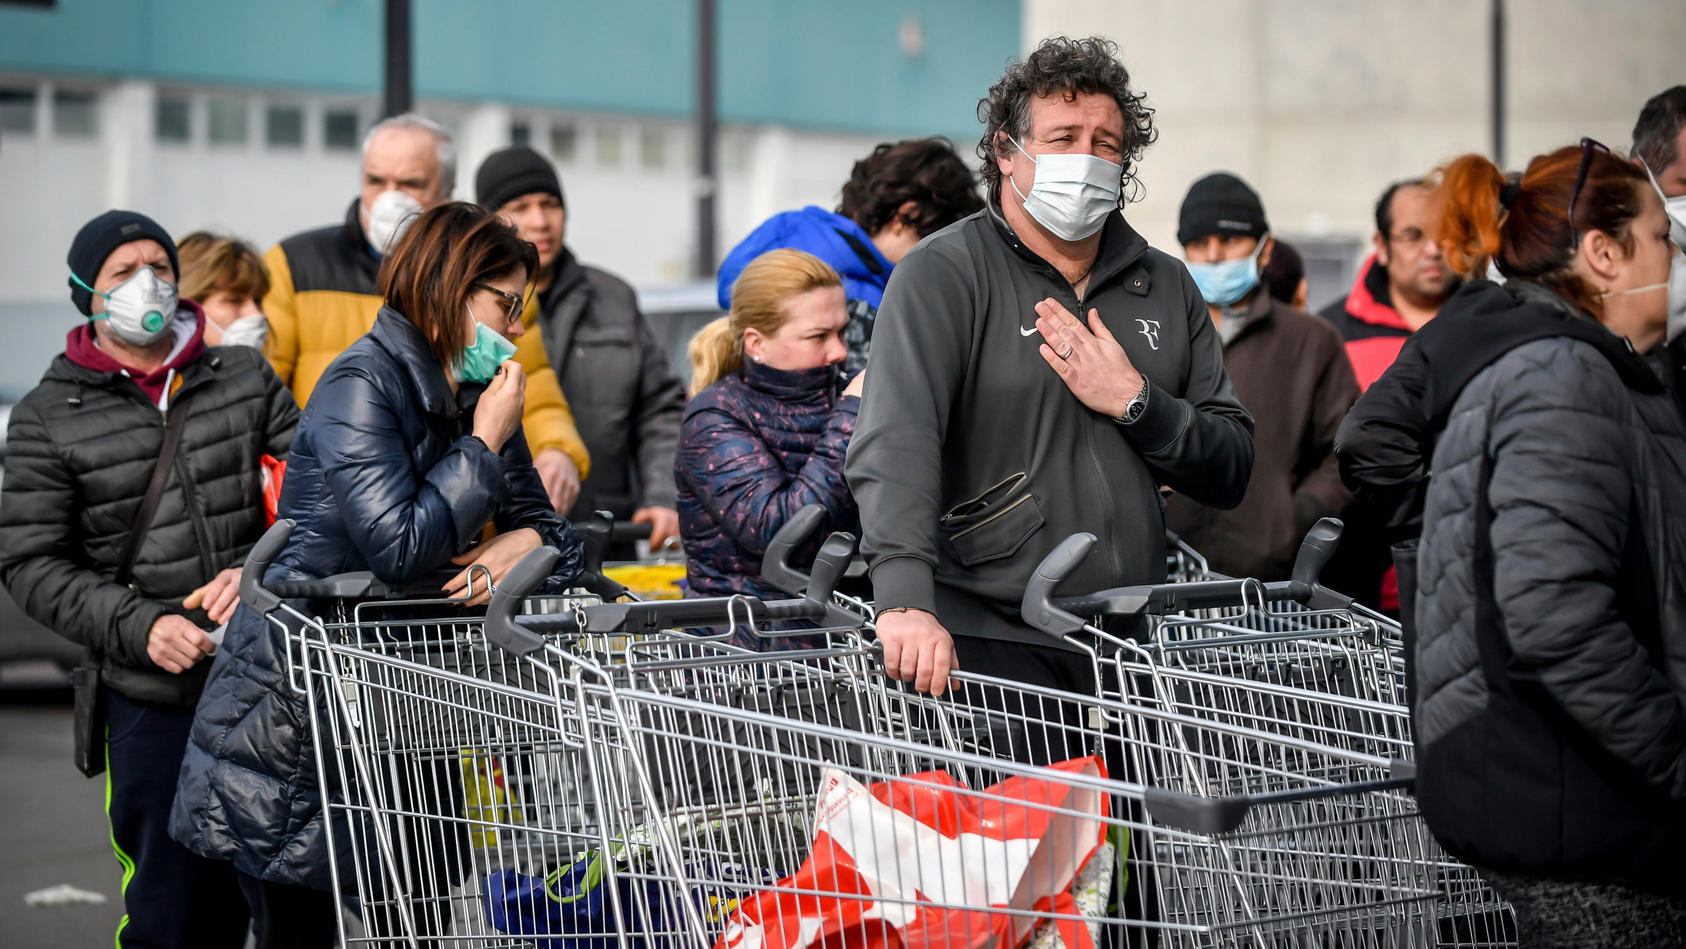 dpatopbilder - 23.02.2020, Italien, Casalpusterlengo: Menschen tragen Atemschutzmasken und stehen vor einem Supermarkt in einer Schlange. Nach dem Tod zweier Menschen sind Teile des öffentlichen Lebens zum Erliegen gekommen. Kein europäisches Land ha